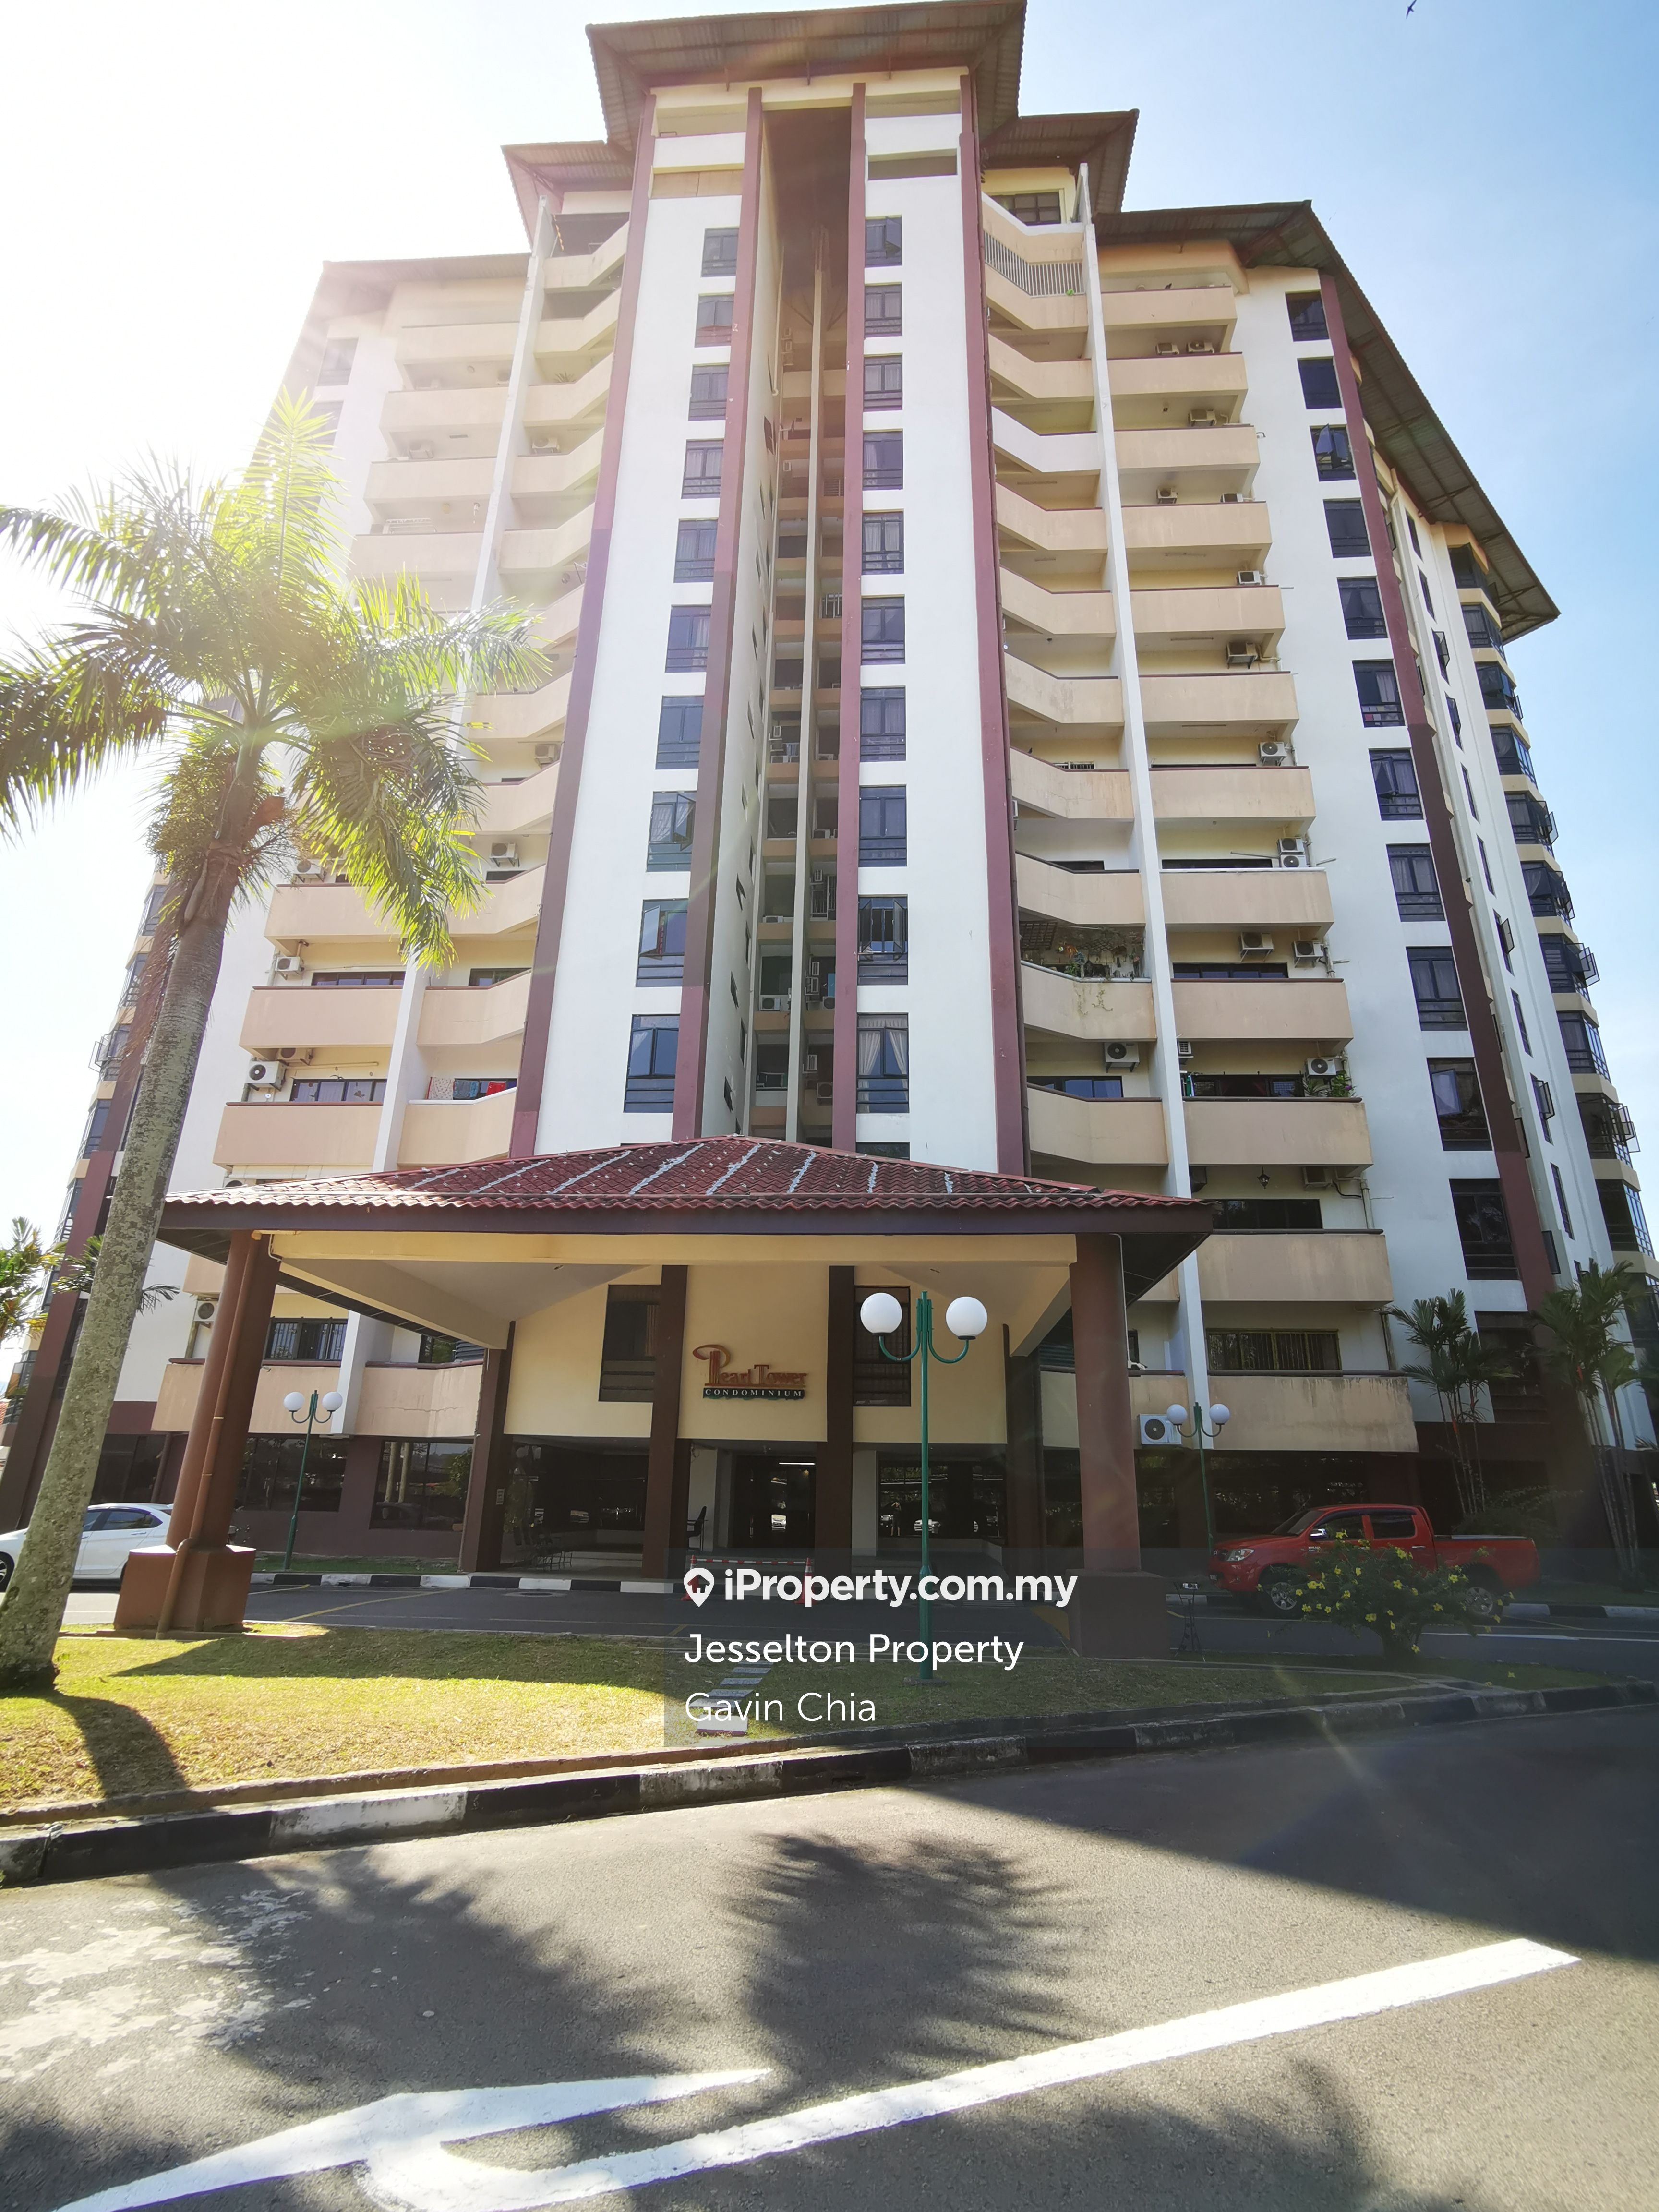 Pearl Tower Condominium 3 bedrooms for rent in Kota Kinabalu, Sabah